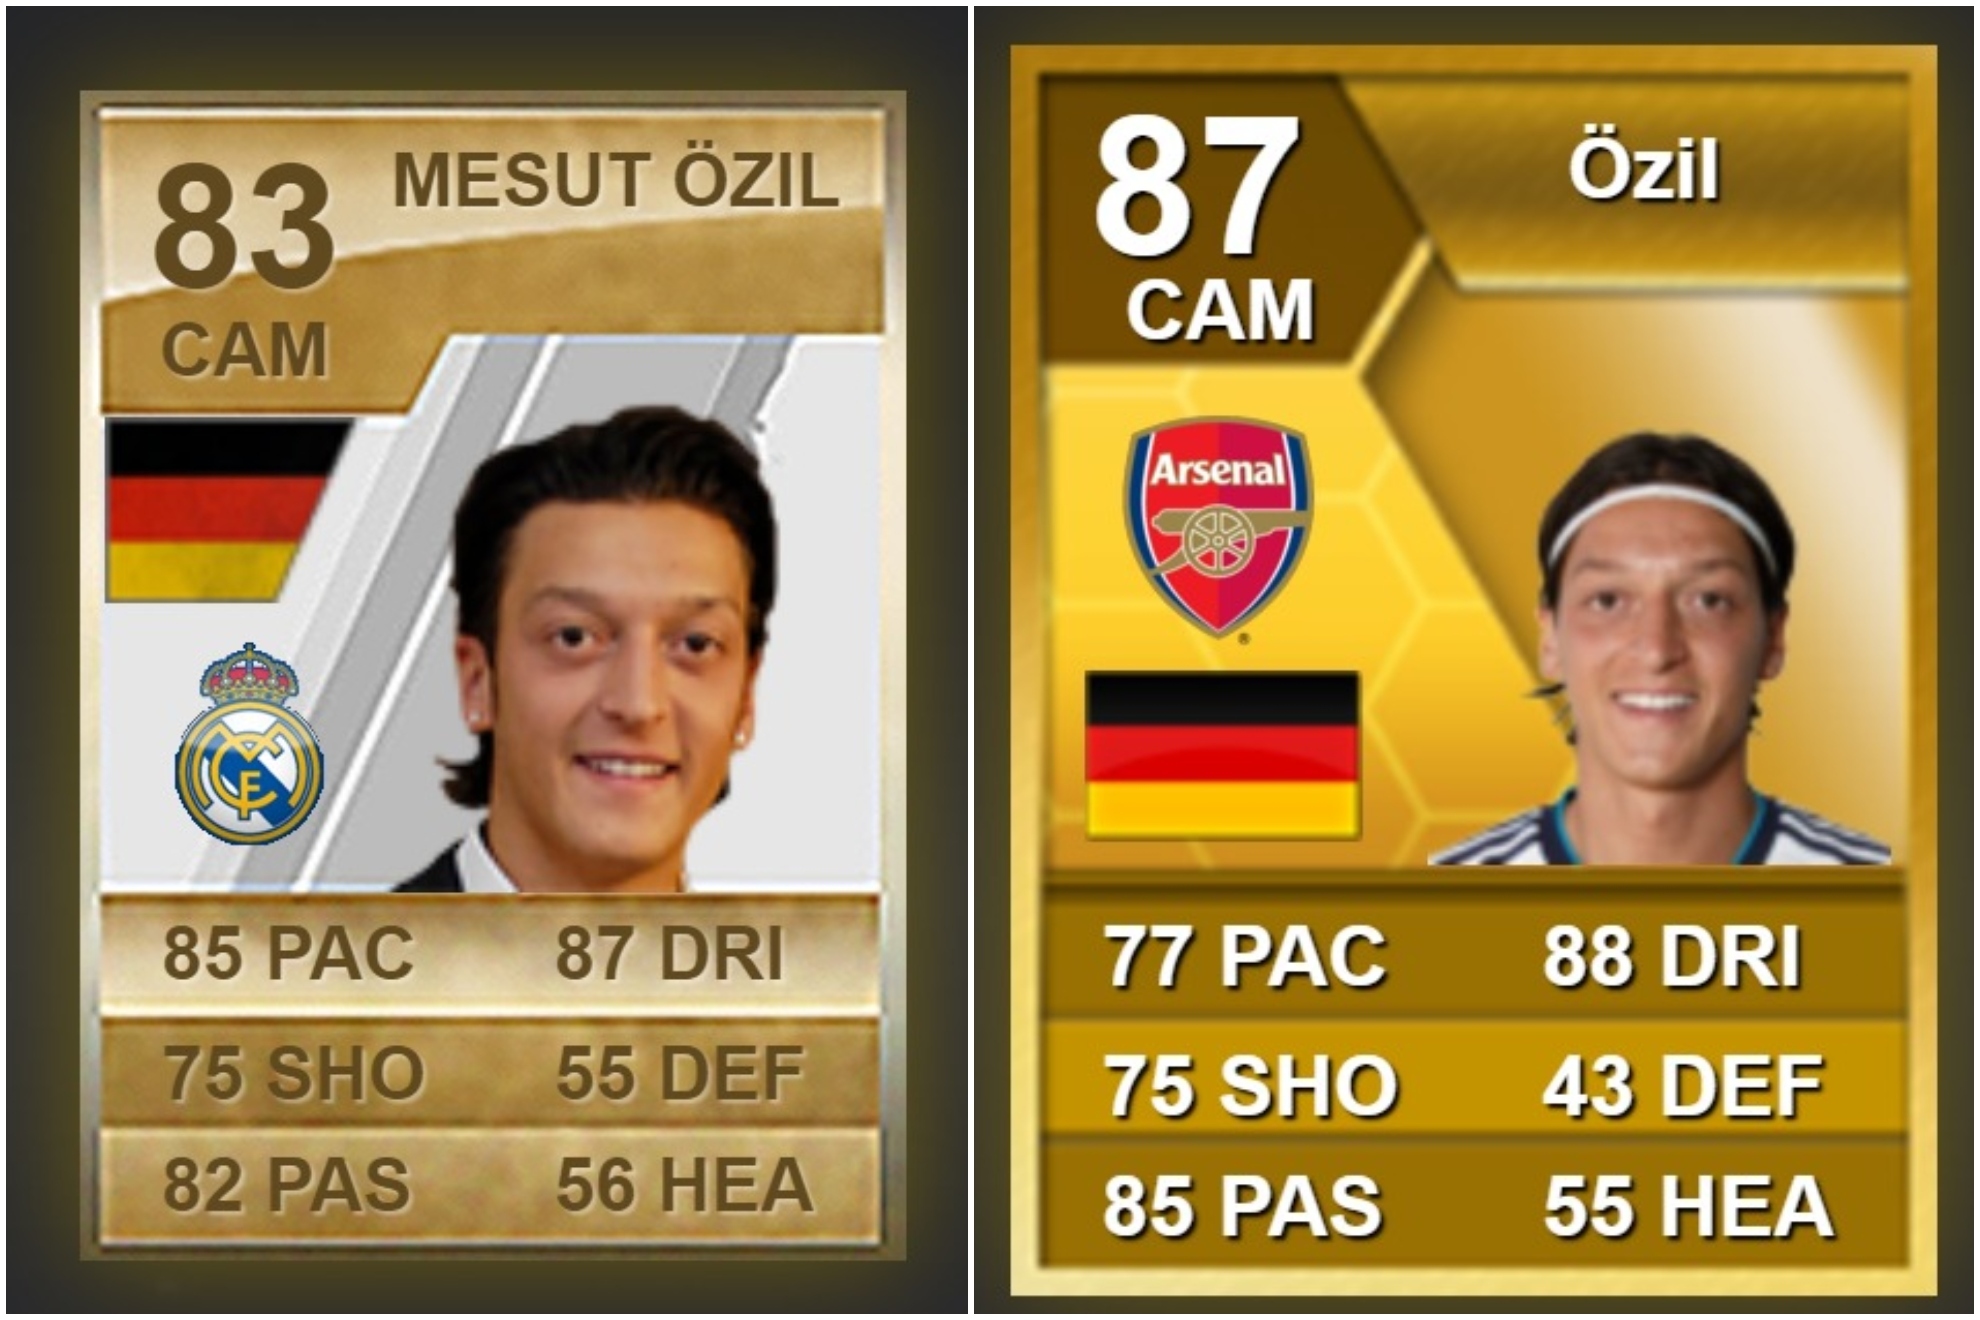 Primera carta de Özil en el Real Madrid y en el Arsenal.